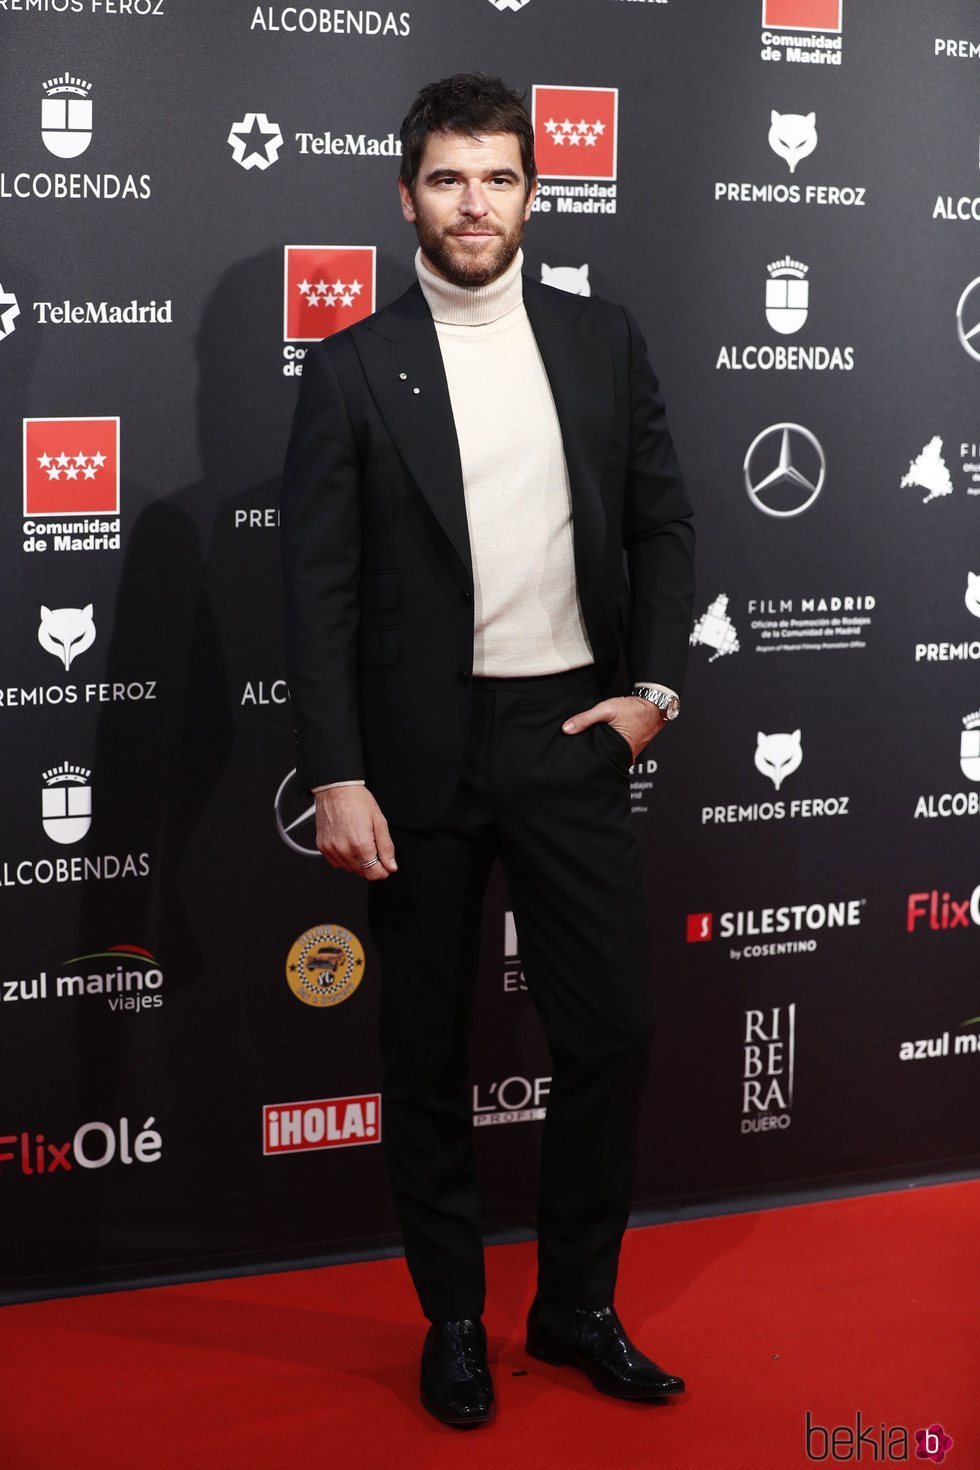 Alfonso Bassave en la alfombra roja de los Premios Feroz 2020